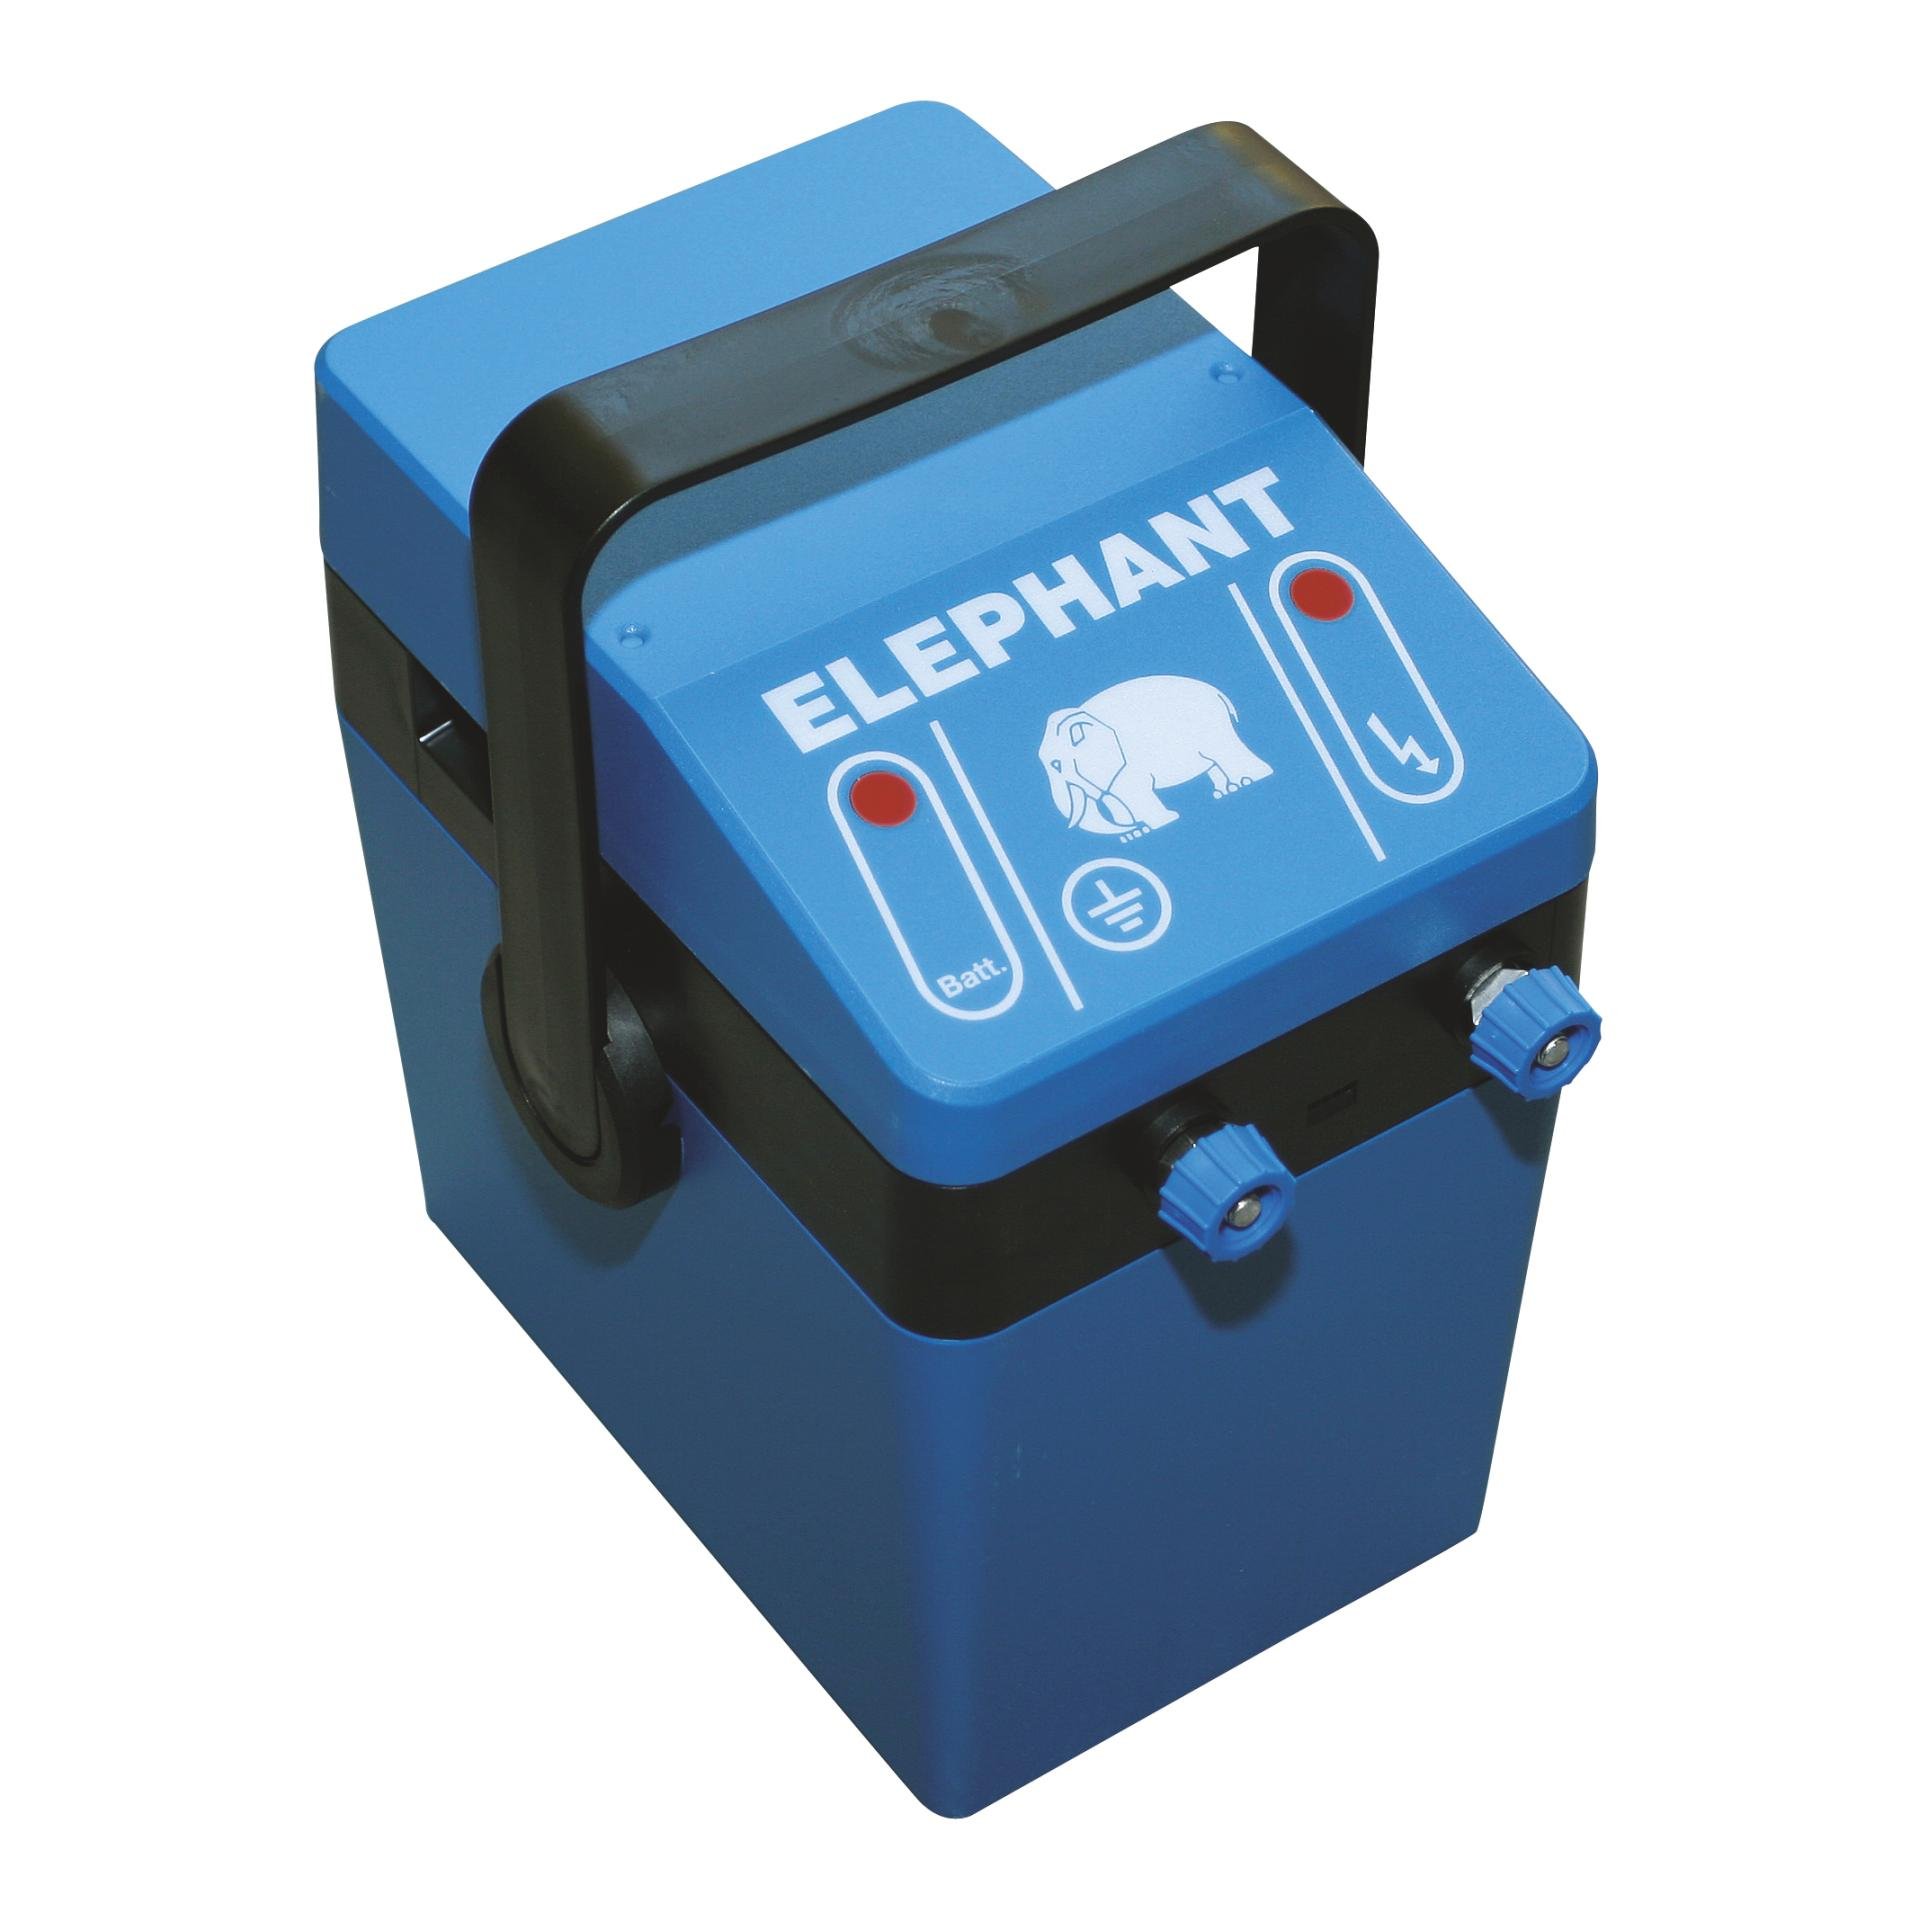 Image of Elephant Batteriegerät Mobil P1 - Blau - bei Hauptner.ch